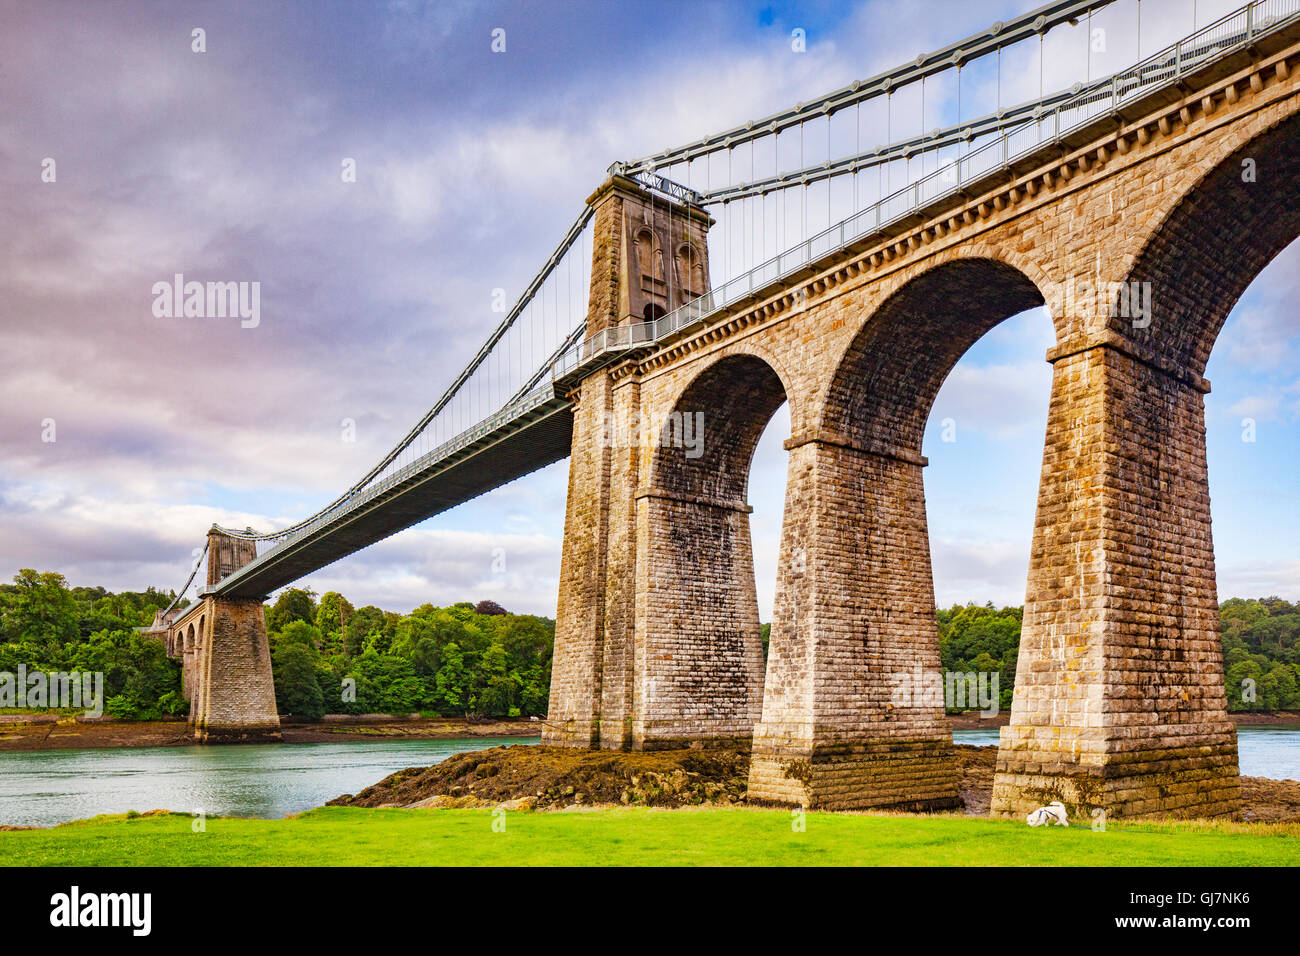 Pont suspendu de Menai, traversant le détroit de Menai, conçu par Thomas Telford, Anglesey, Pays de Galles, Royaume-Uni Banque D'Images